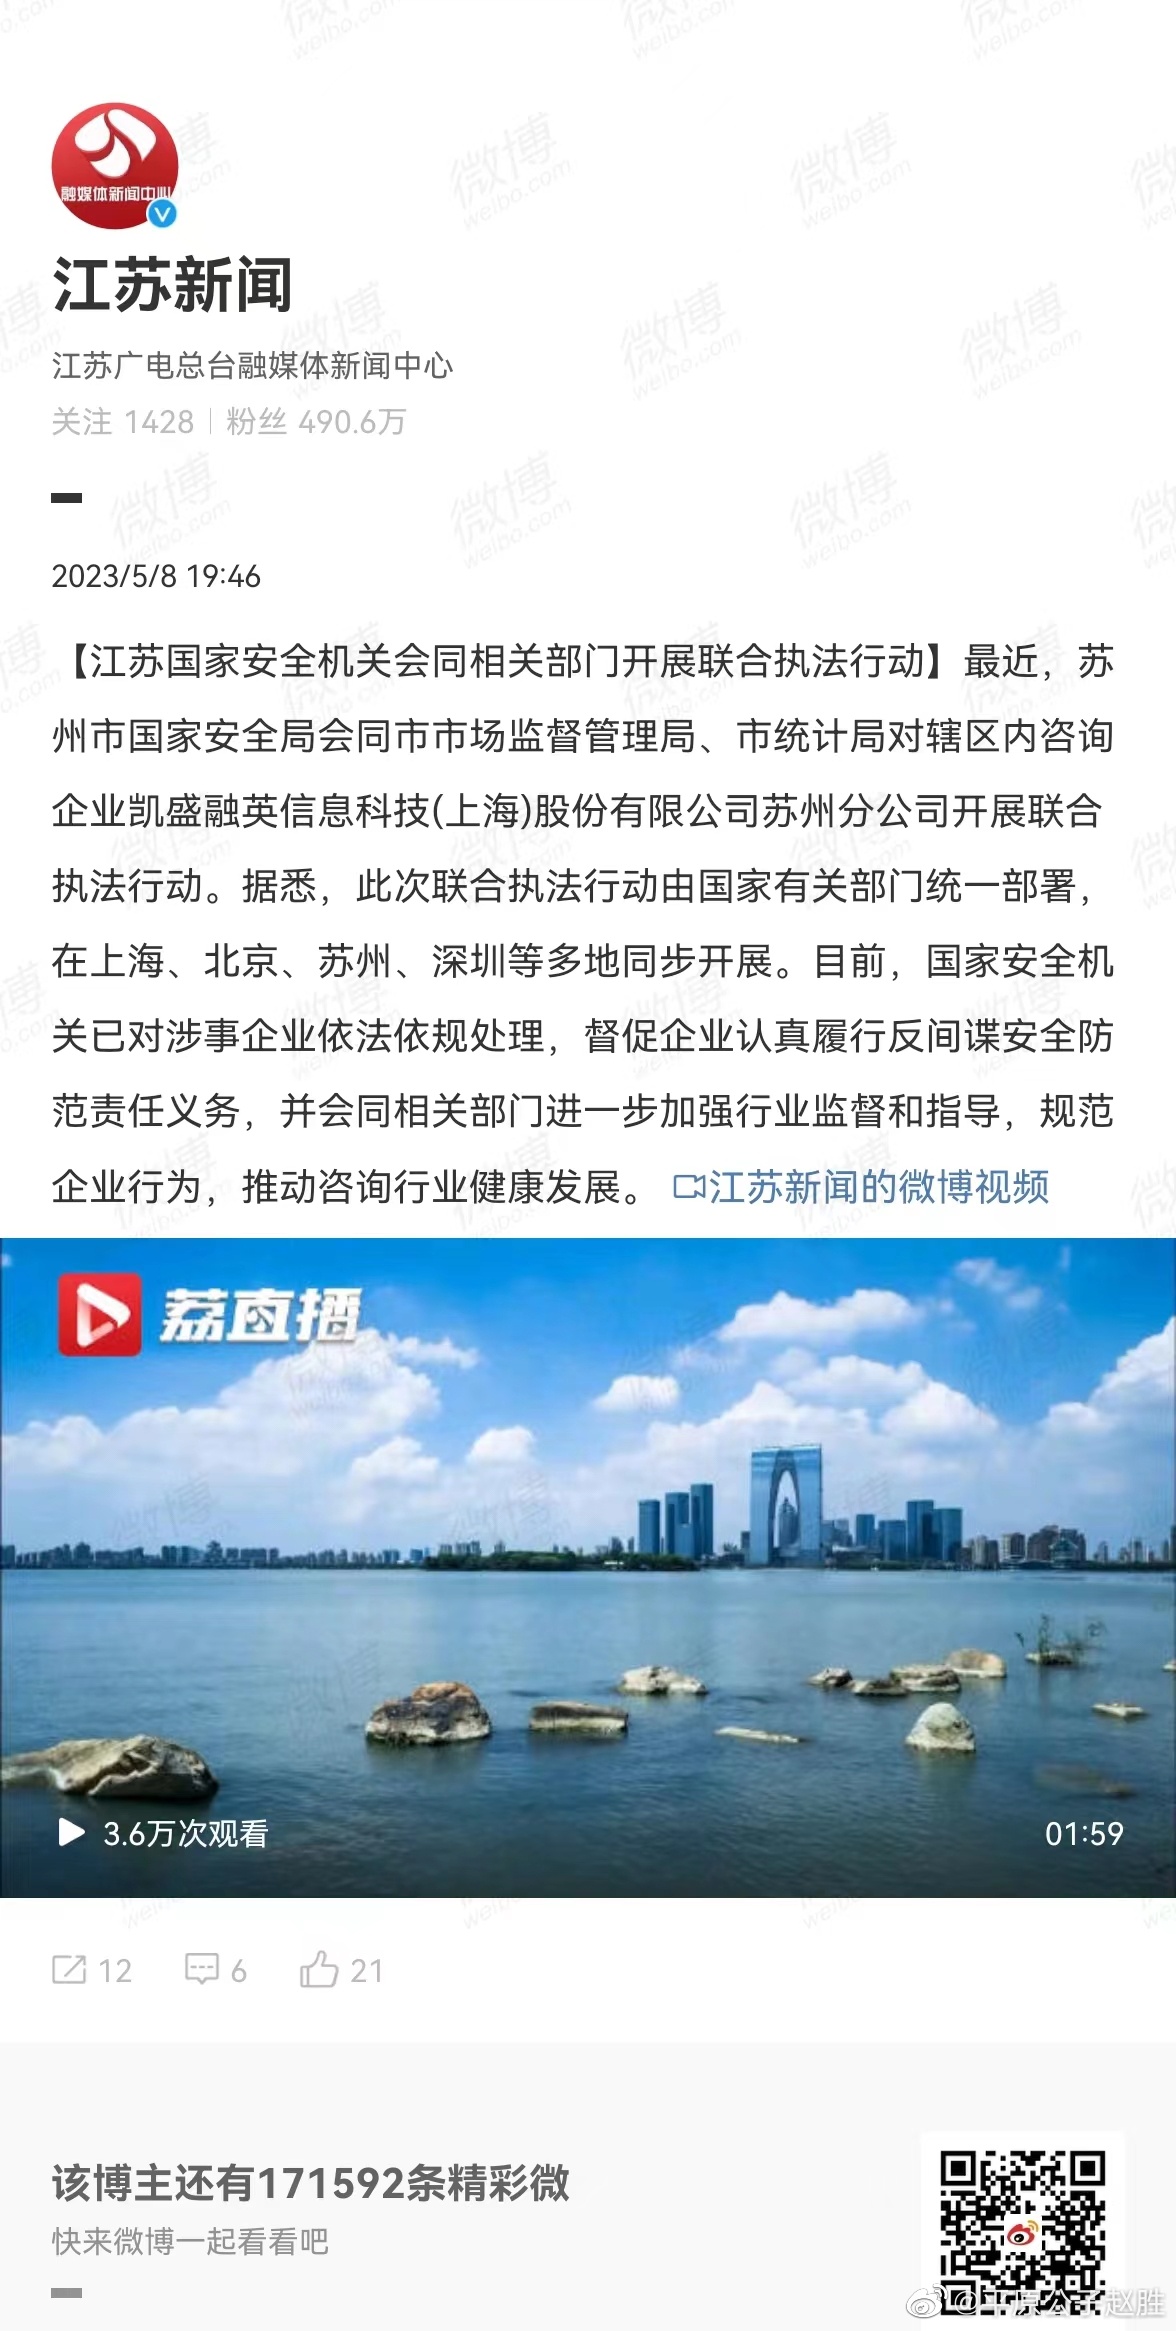 上海邀请通用汽车加大本地投资